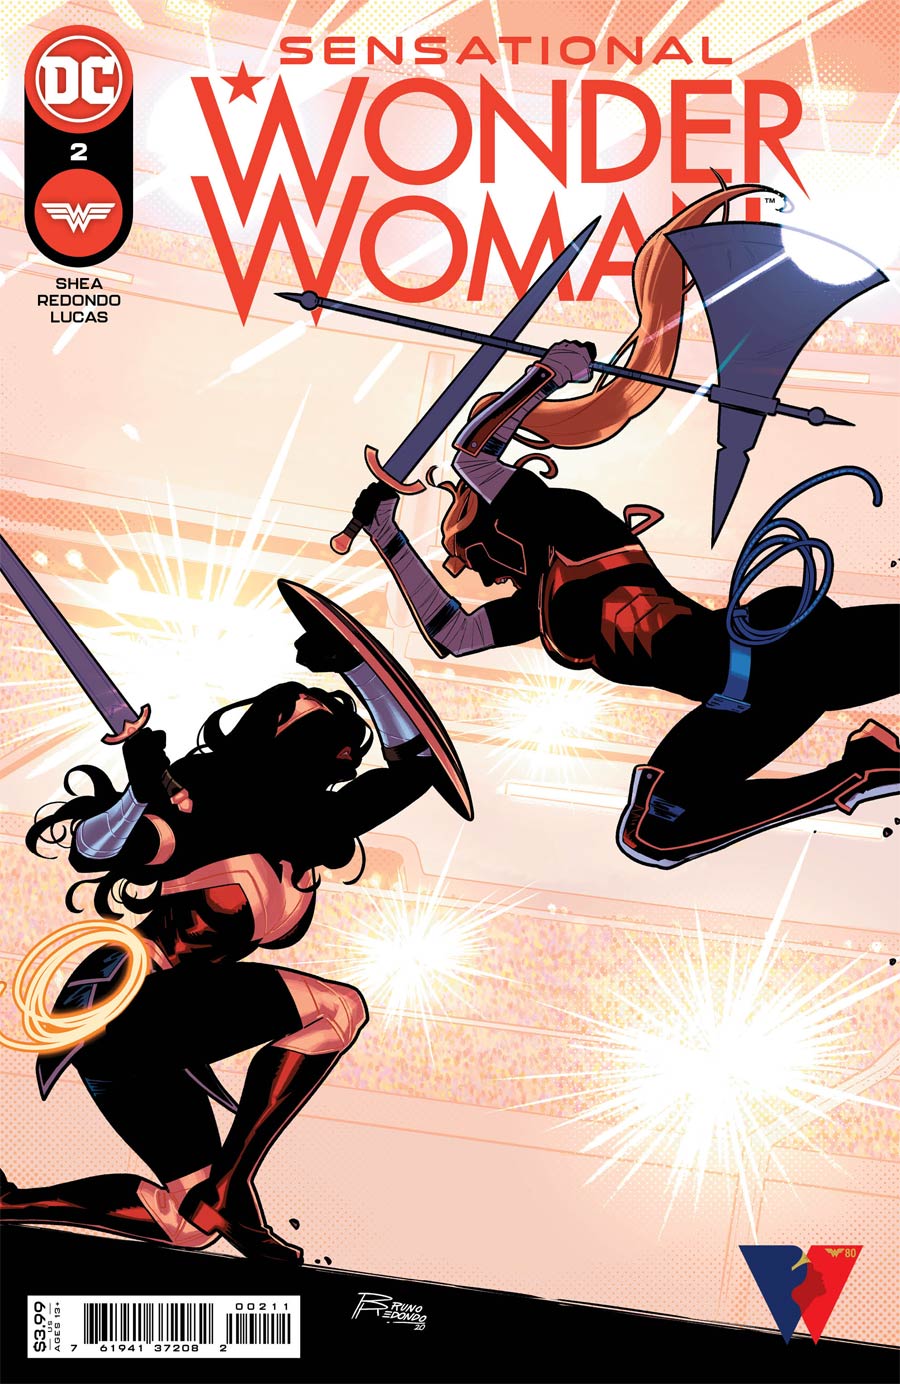 Sensational Wonder Woman #2 Cover A Regular Bruno Redondo Cover